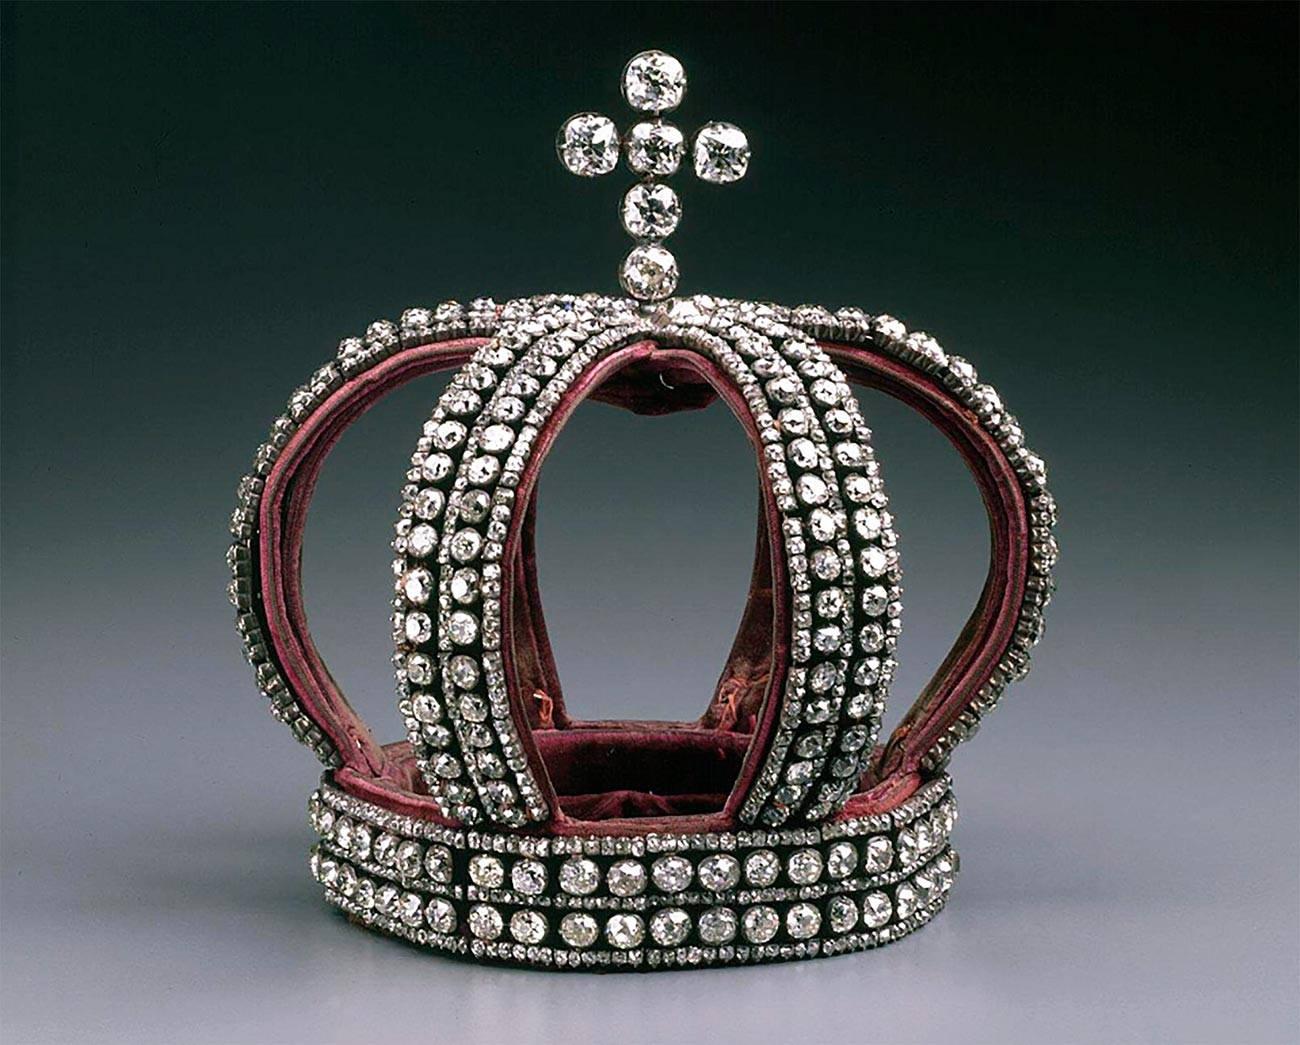 La corona imperiale dei Romanov
